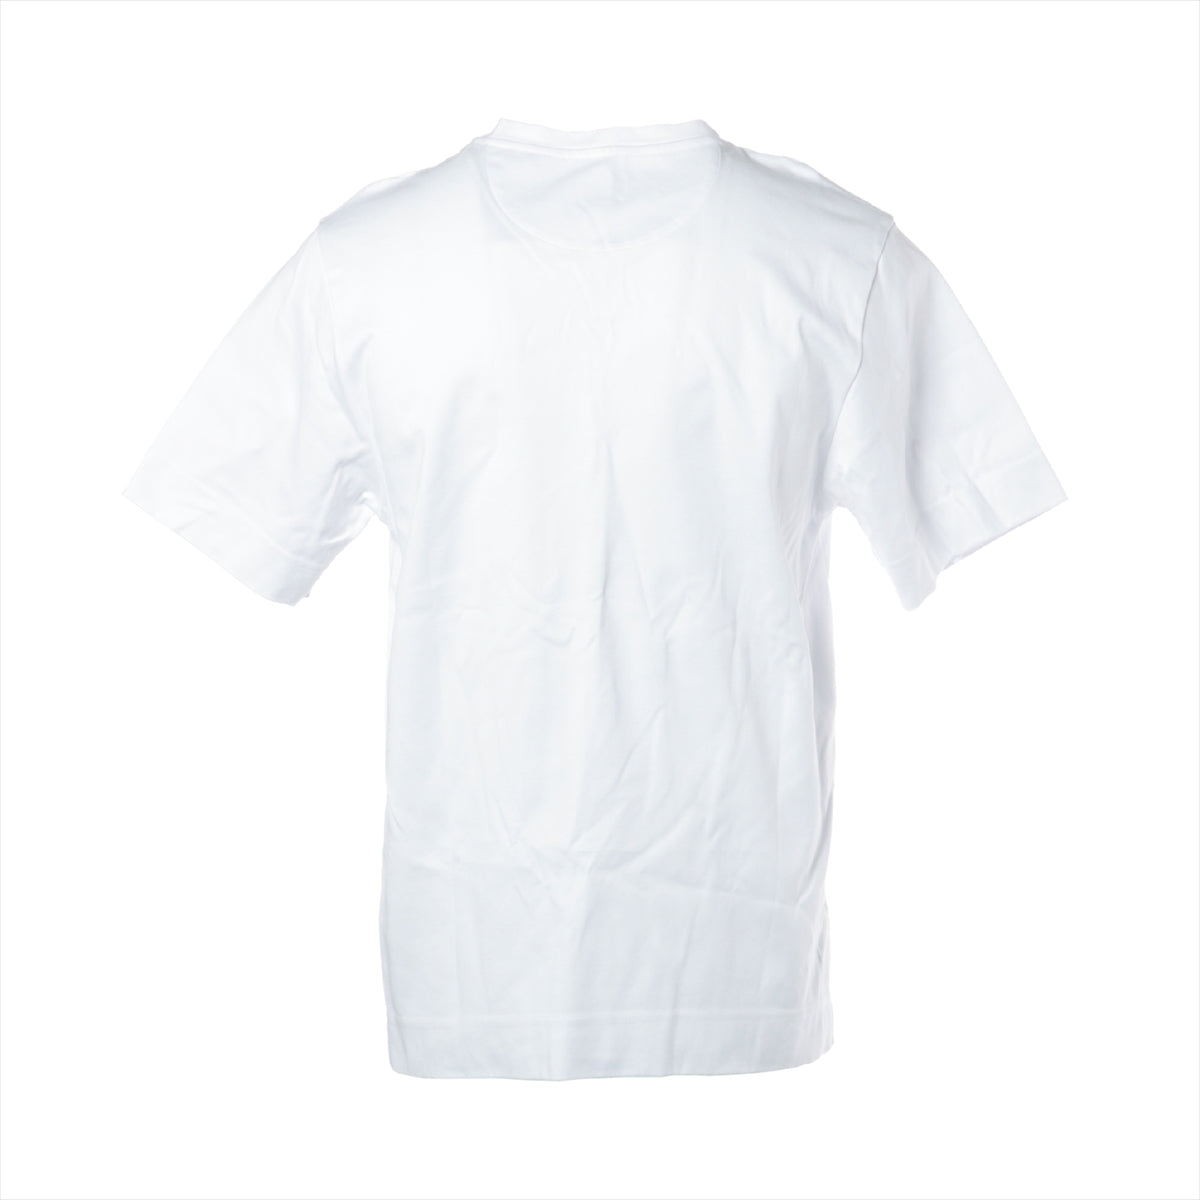 フェンディ 23SS コットン Tシャツ XS メンズ ホワイト  FFロゴ オーロック モチーフ FY0936 オーバーサイズ クルーネック